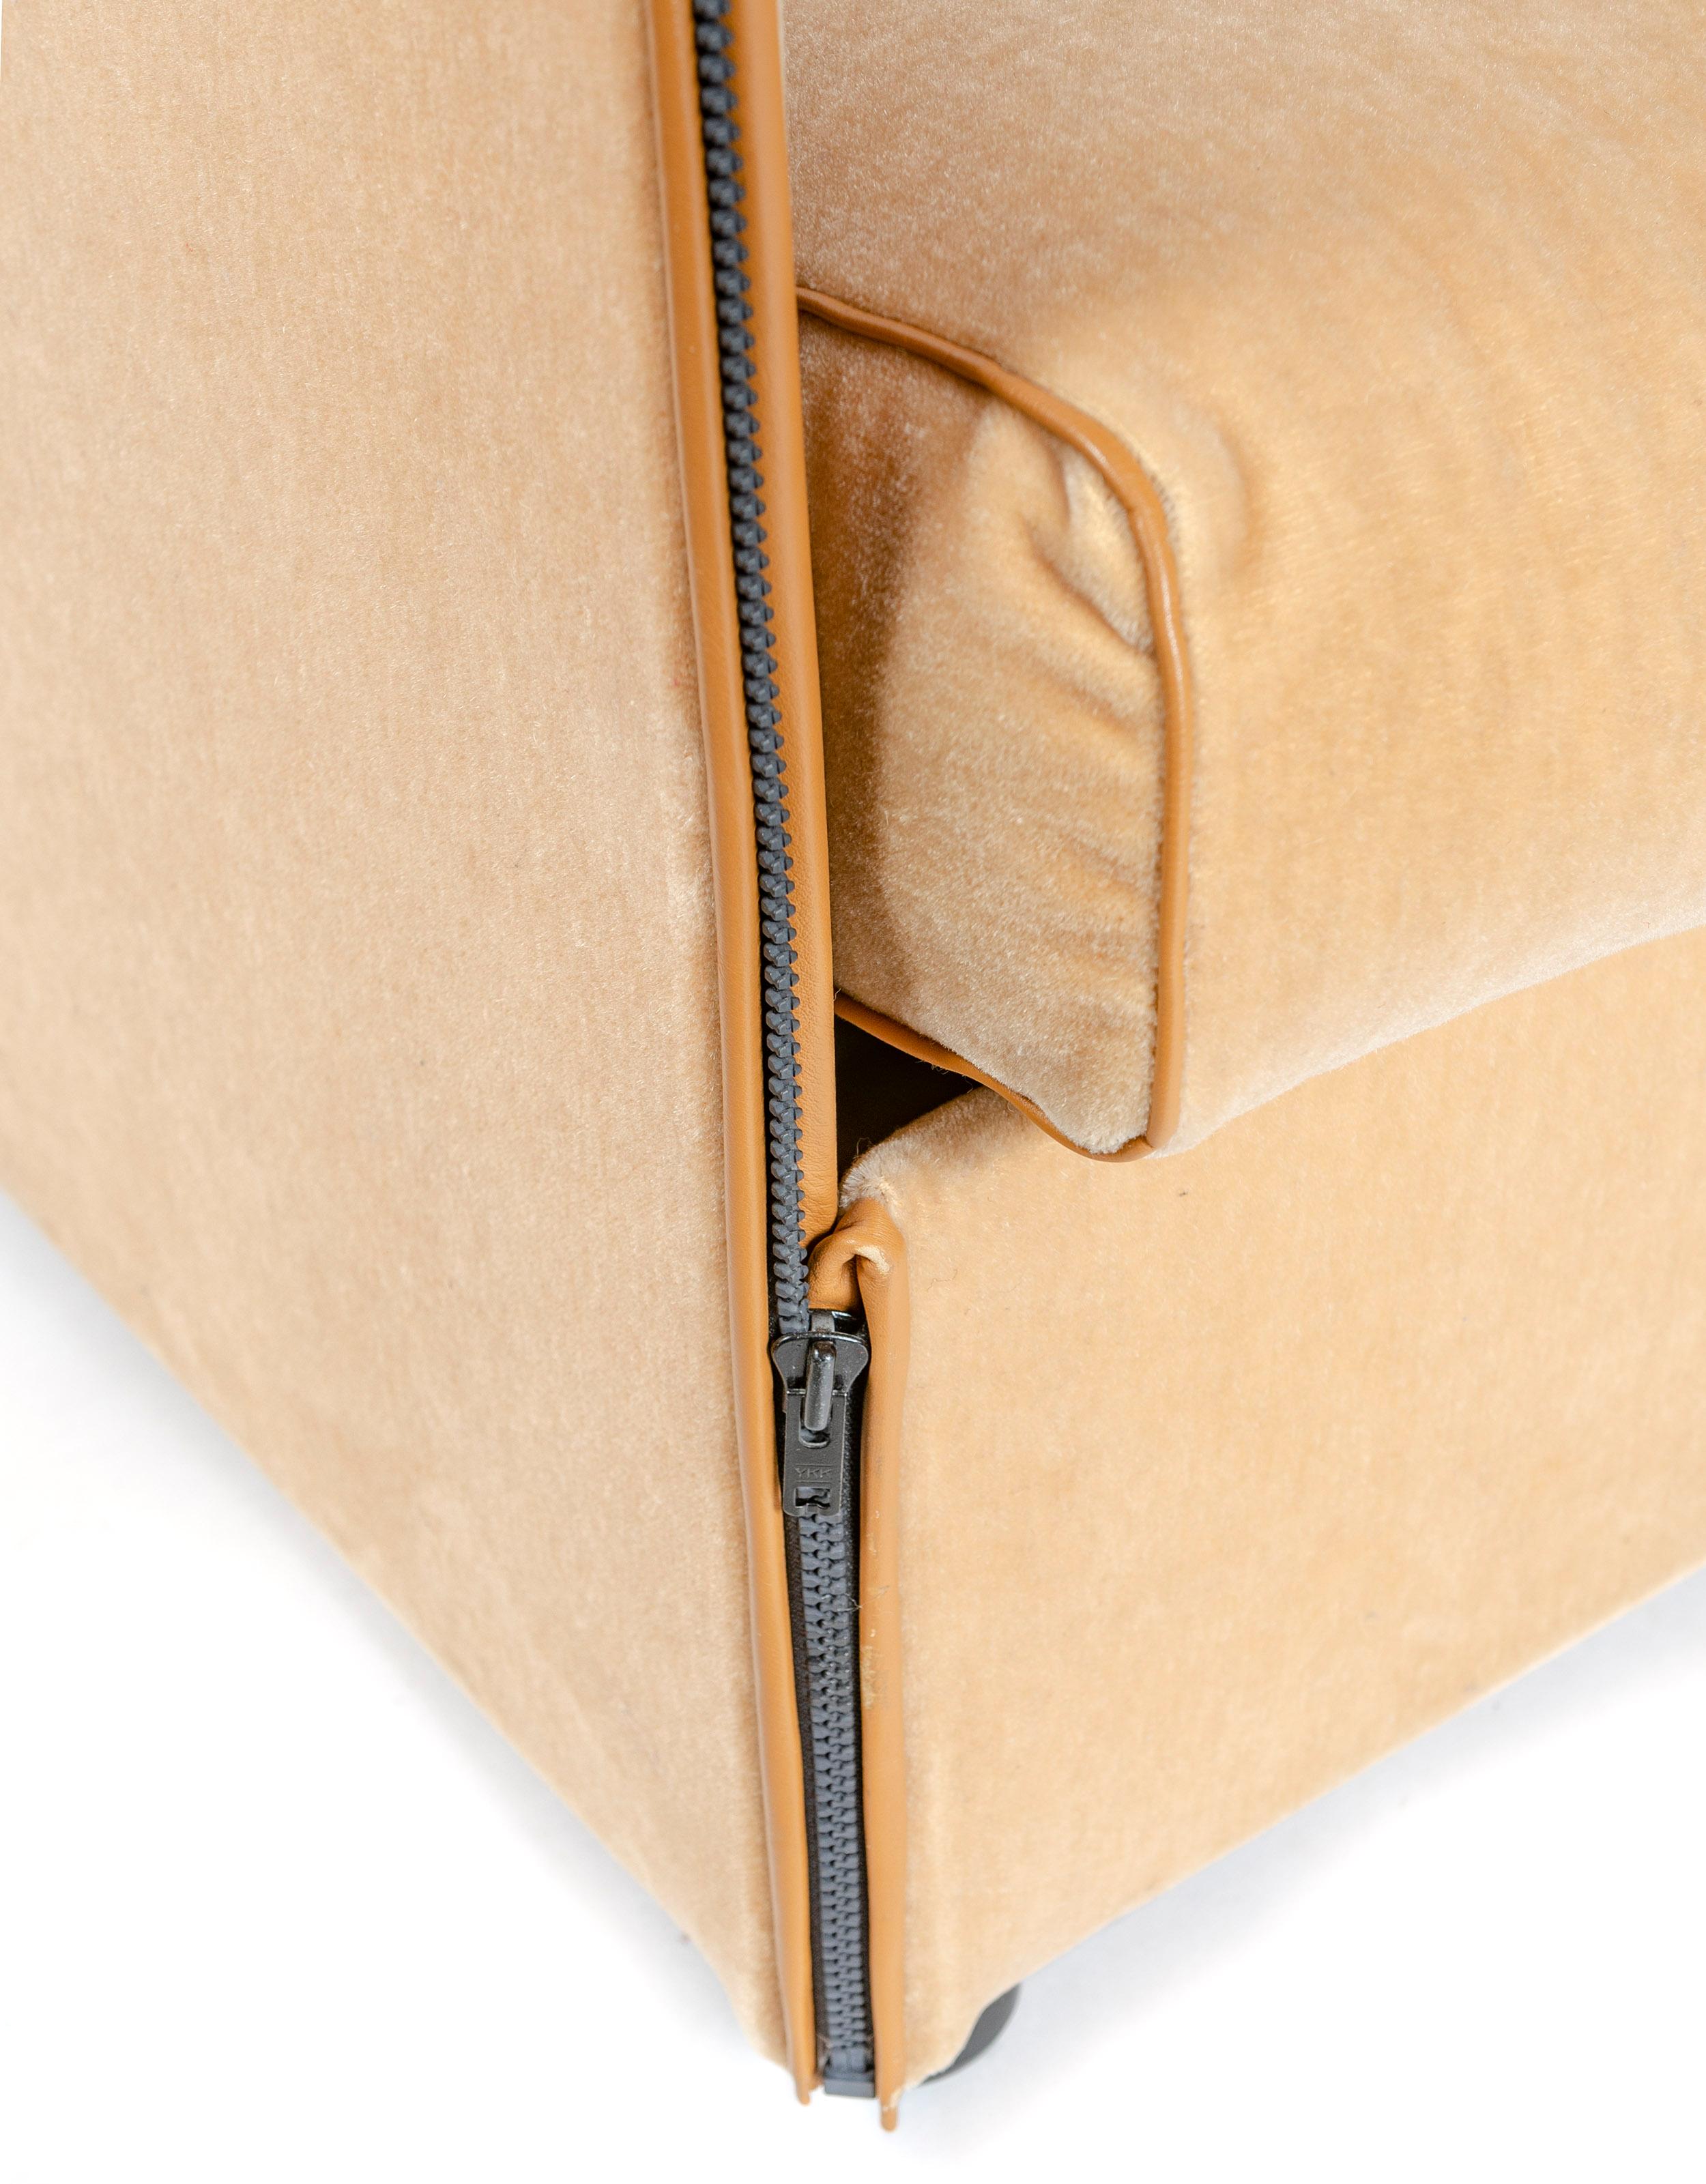 Un canapé sectionnel modulable 'Landeau' de sept (7) pièces en mohair d'origine avec une bordure en cuir de couleur camel. Les unités peuvent être dézippées et mélangées pour des orientations supplémentaires.